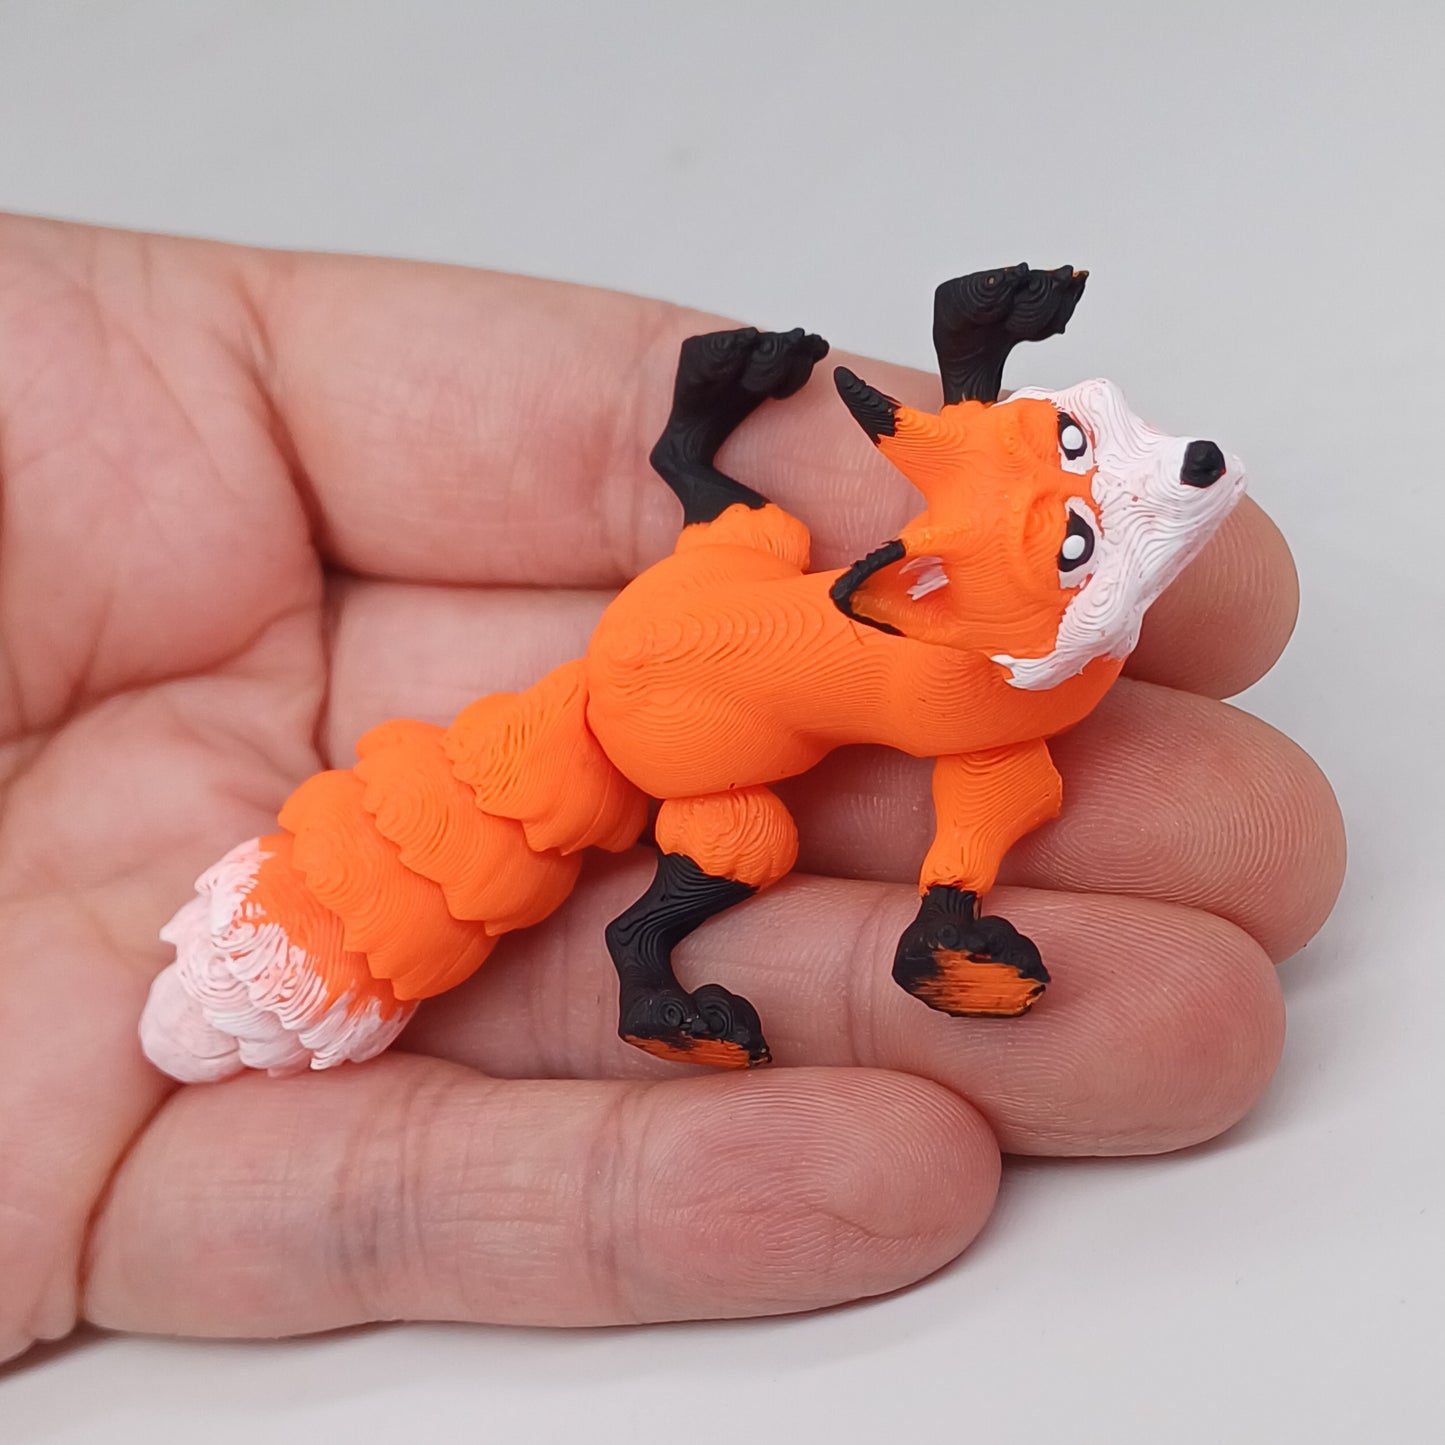 Fox miniature in scale 1:12